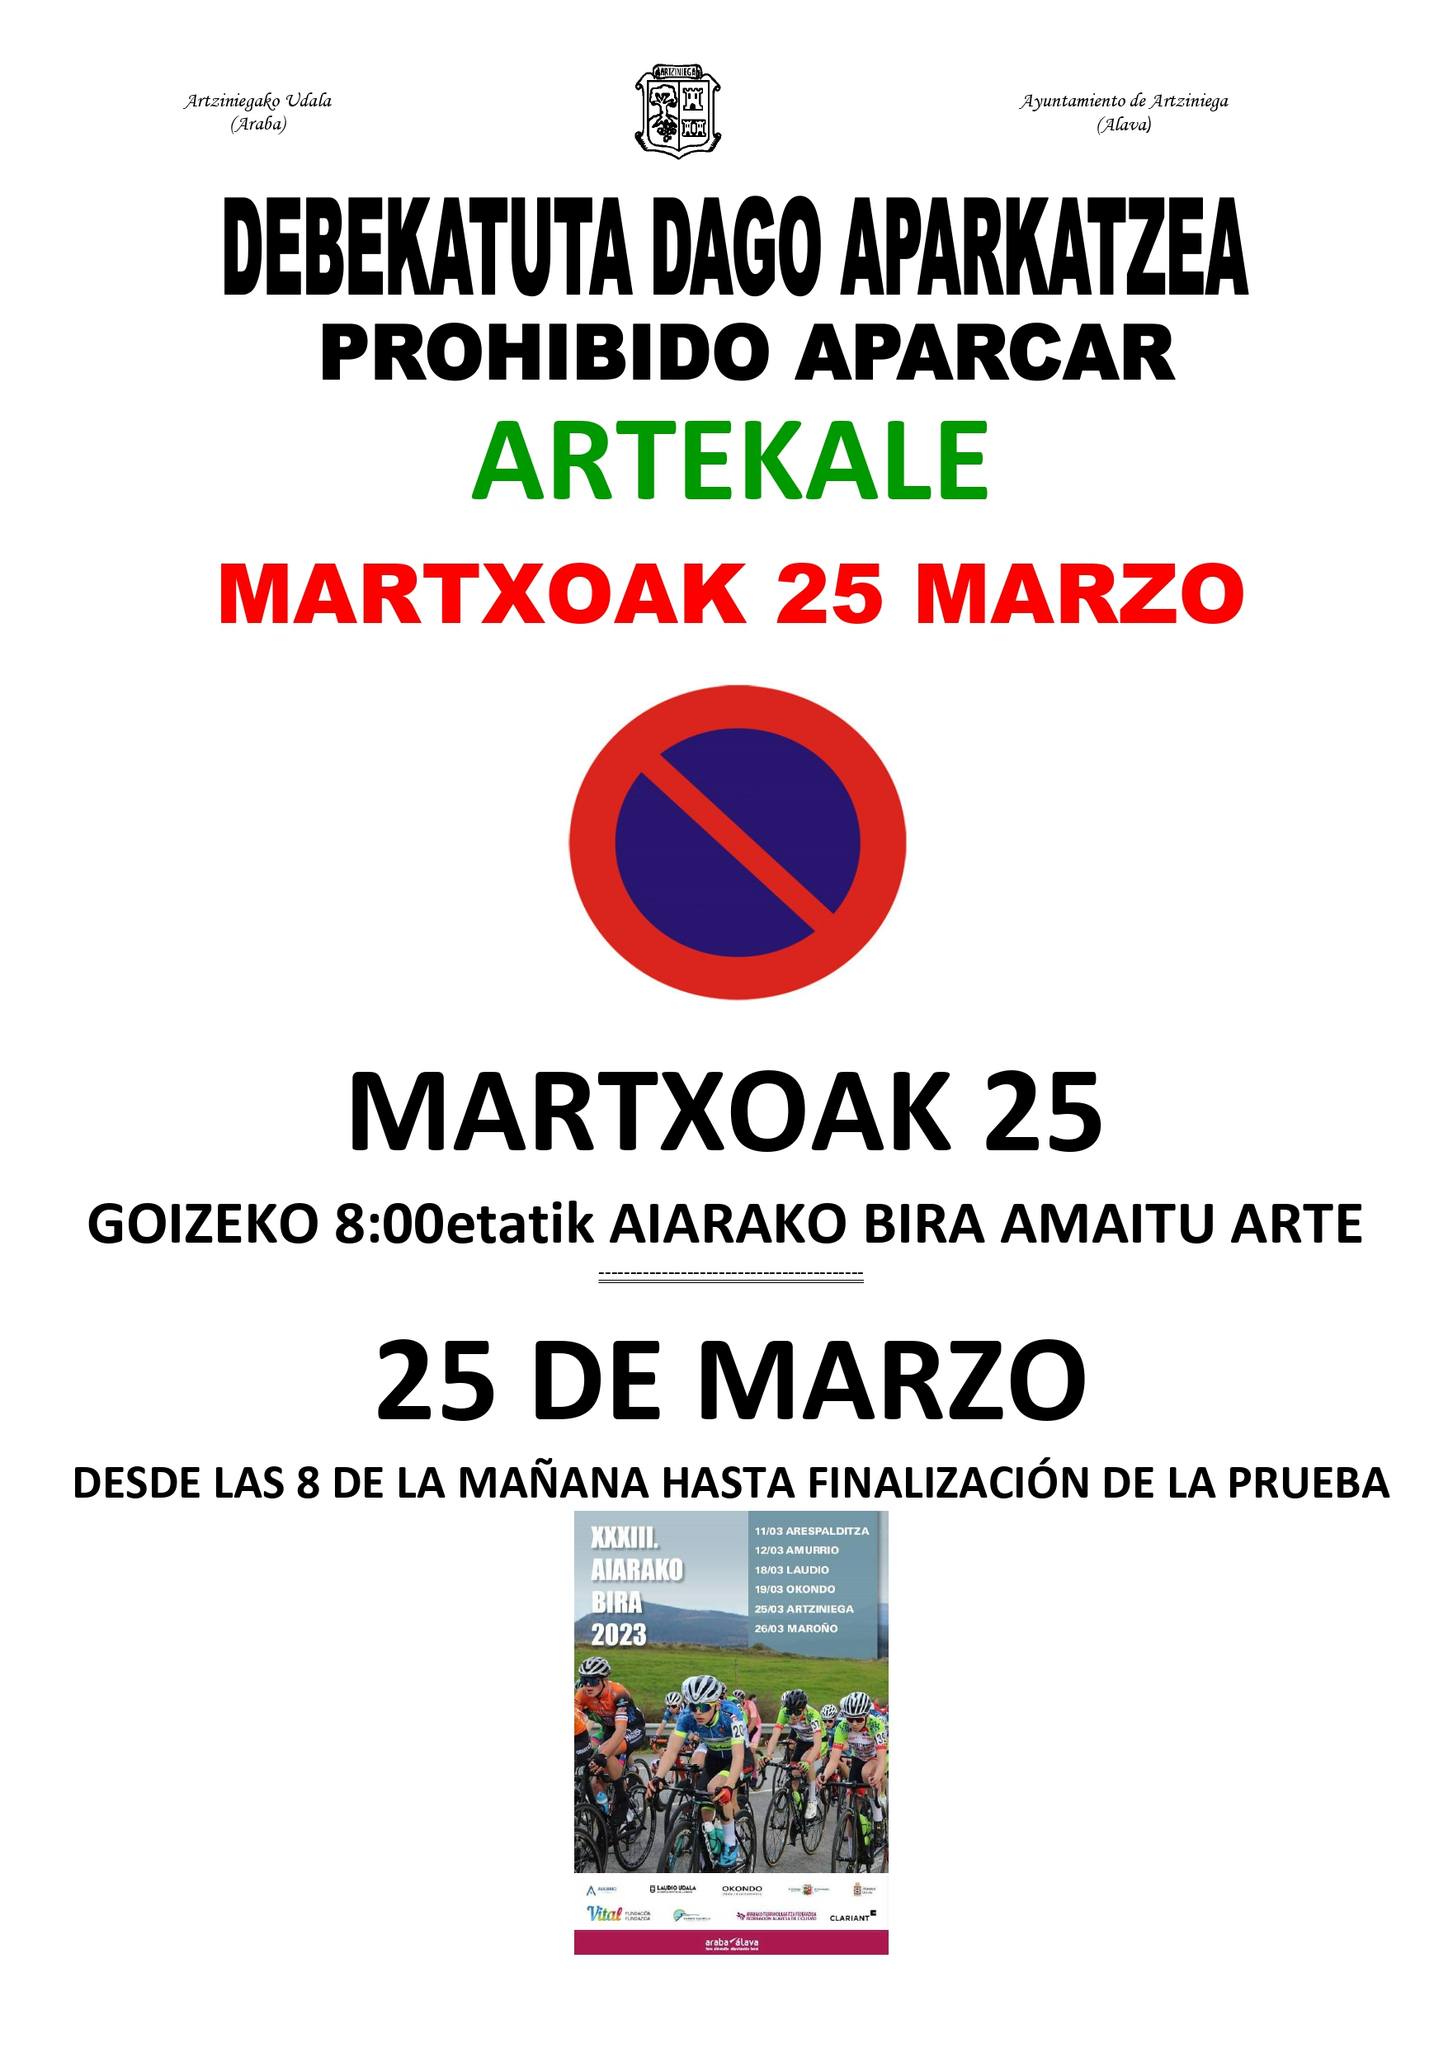 Este sábado, 25 de marzo, la Aiarako Bira finalizará en Artekale Plaza. Por ello, está prohibido estacionar en el lugar desde las 8:00 de la mañana hasta la finalización de la prueba.